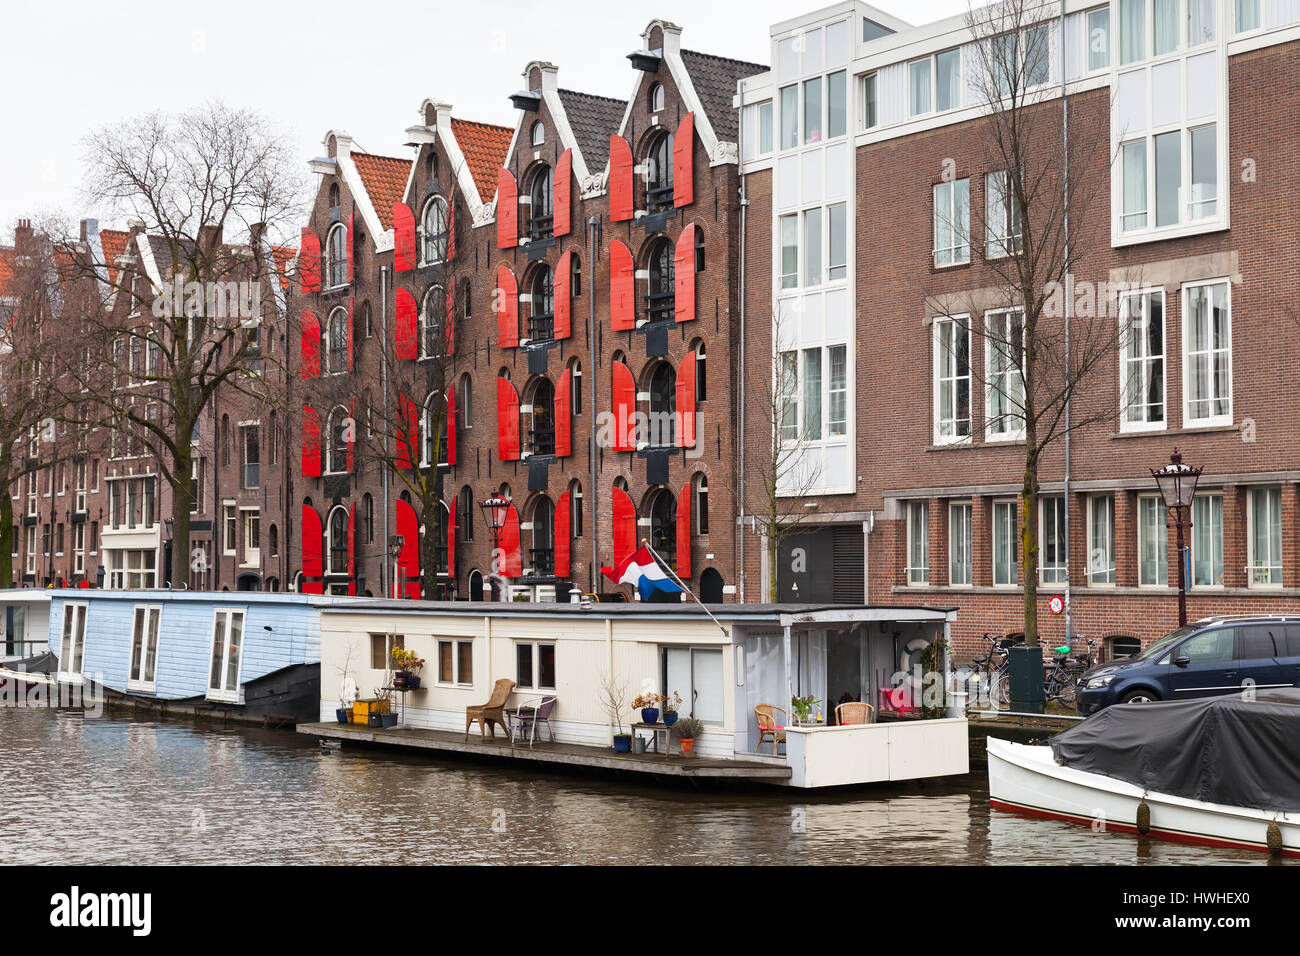 Maisons de vie traditionnels colorés et péniches le long du canal à Amsterdam, Pays-Bas. Filtre de correction tonale vintage chaud, effet retro style Banque D'Images